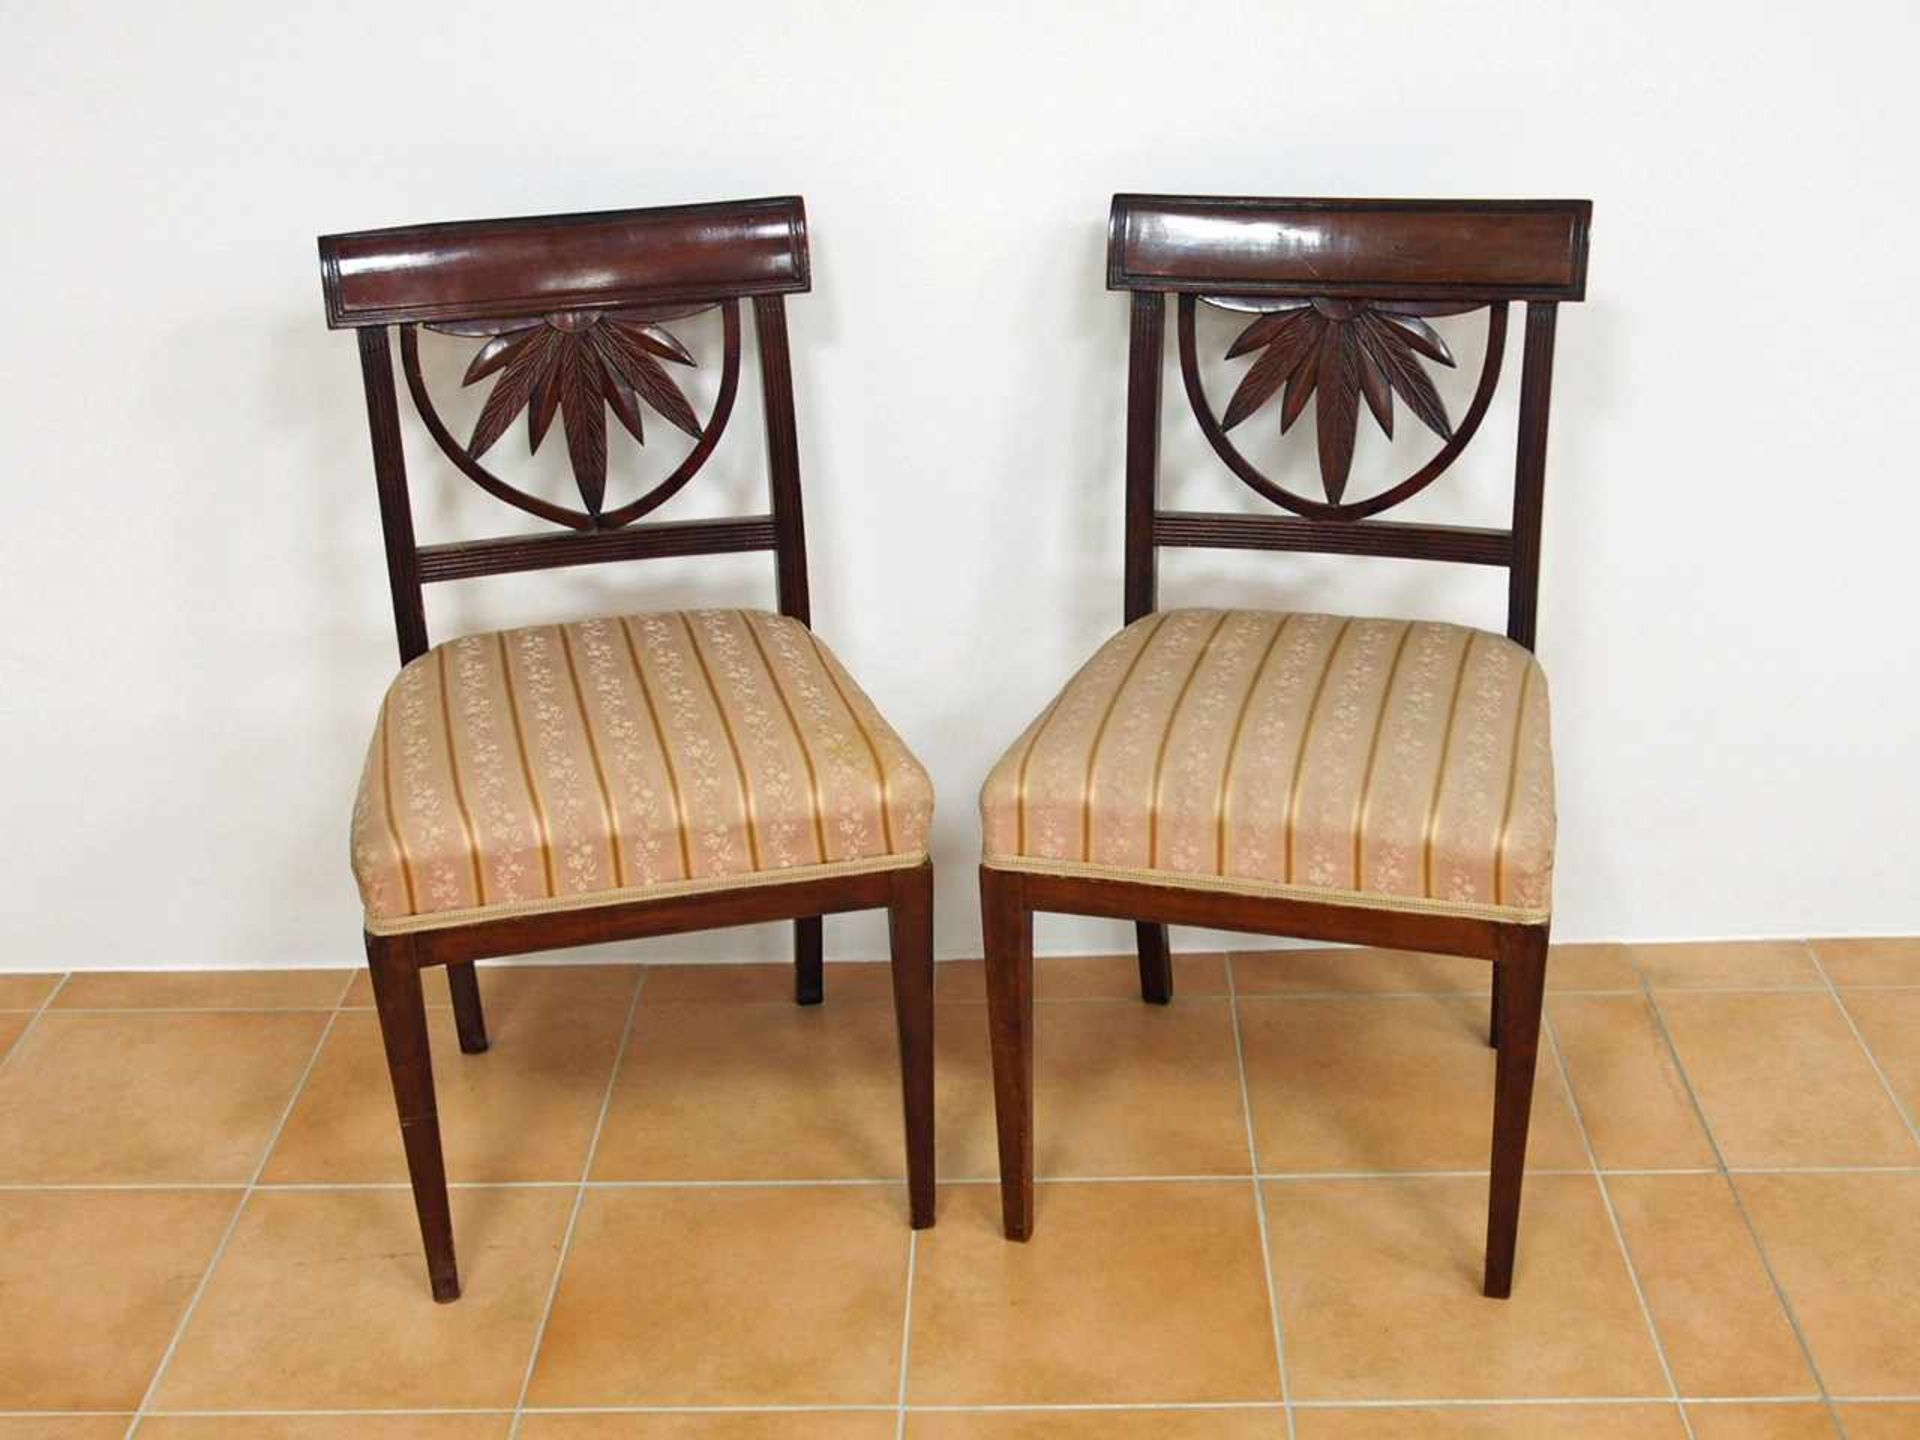 Paar Stühle mit BlattversproßungMahagoni, Norddeutsch, um 1820, Höhe 83 cm- - -25.00 % buyer's